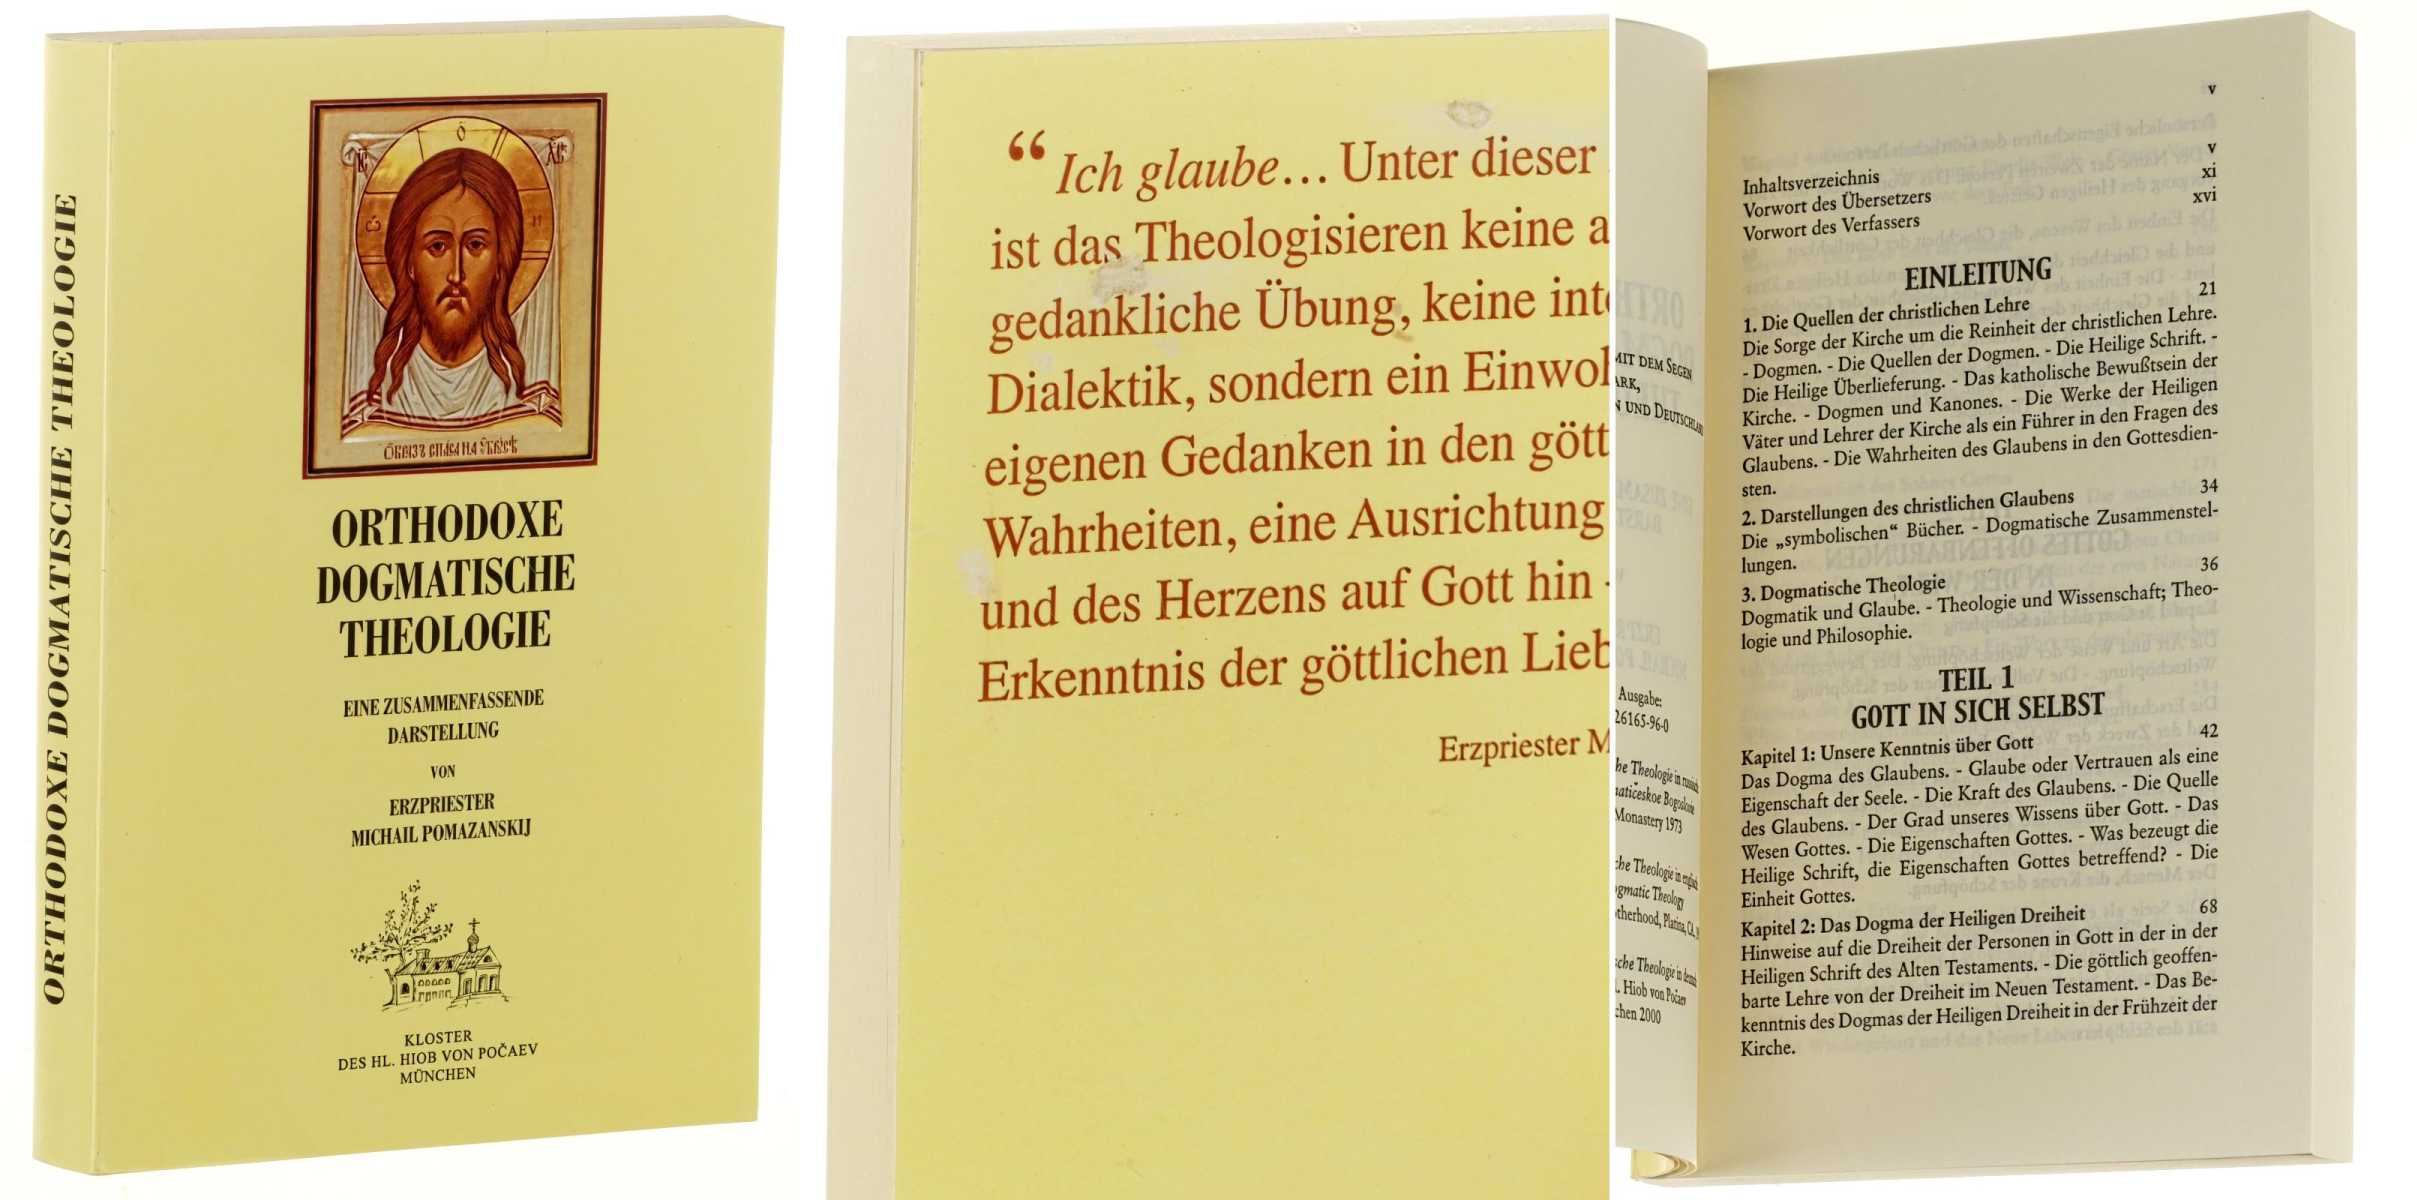 Pomazanskij, Michail:  Orthodoxe dogmatische Theologie. Eine zusammenfassende Darstellung. 